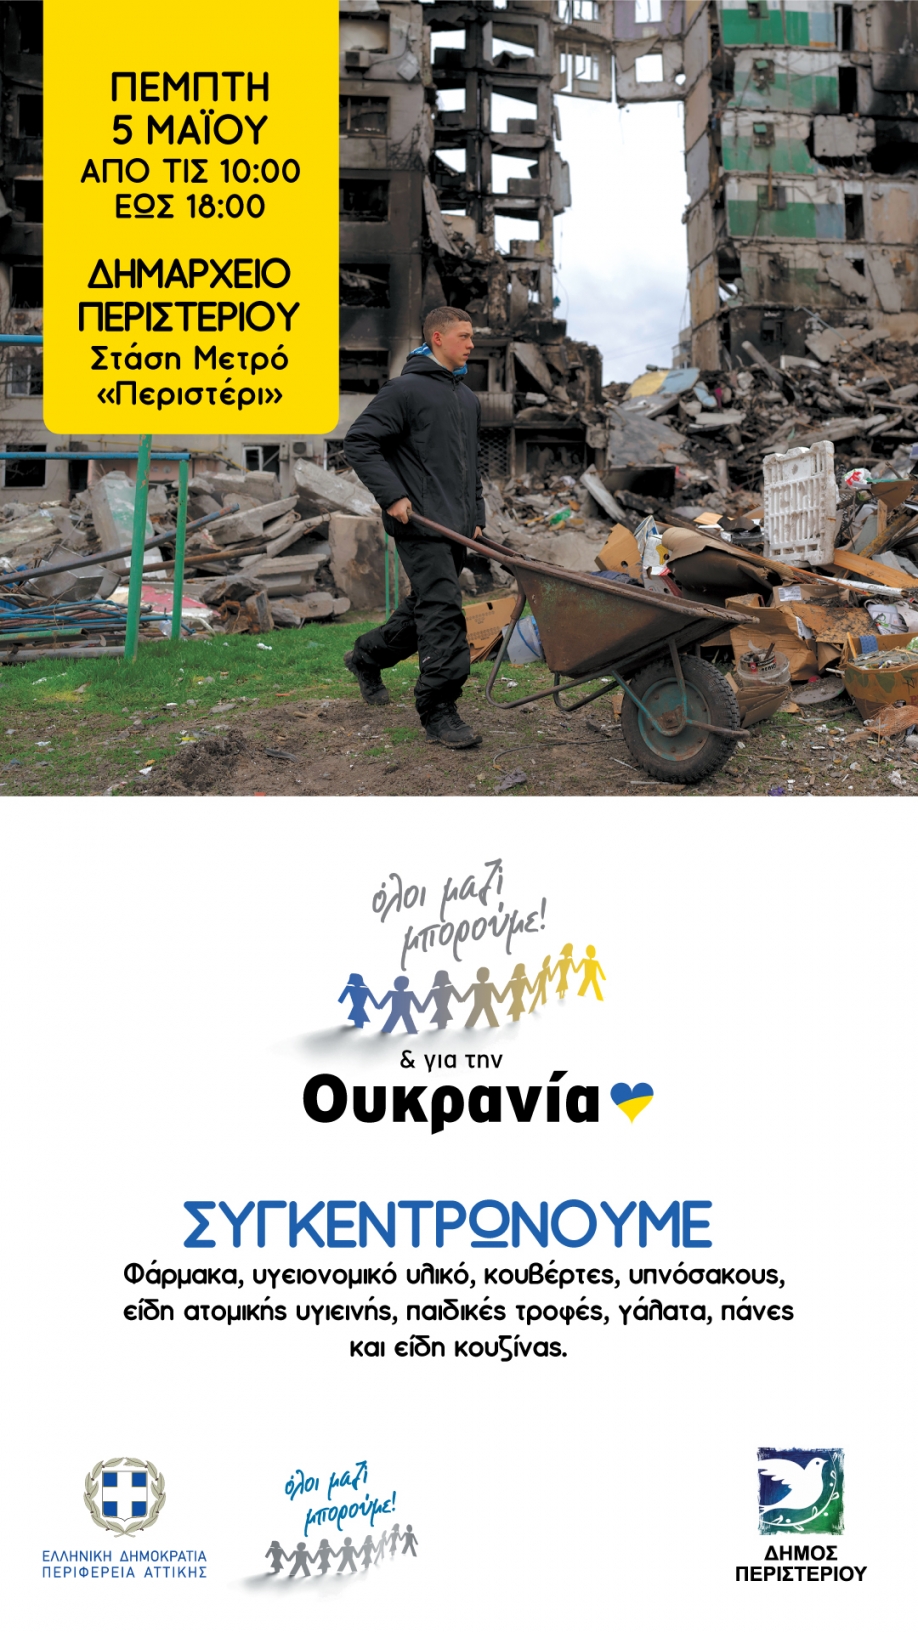 Συγκέντρωση ανθρωπιστικής βοήθειας για την Ουκρανία